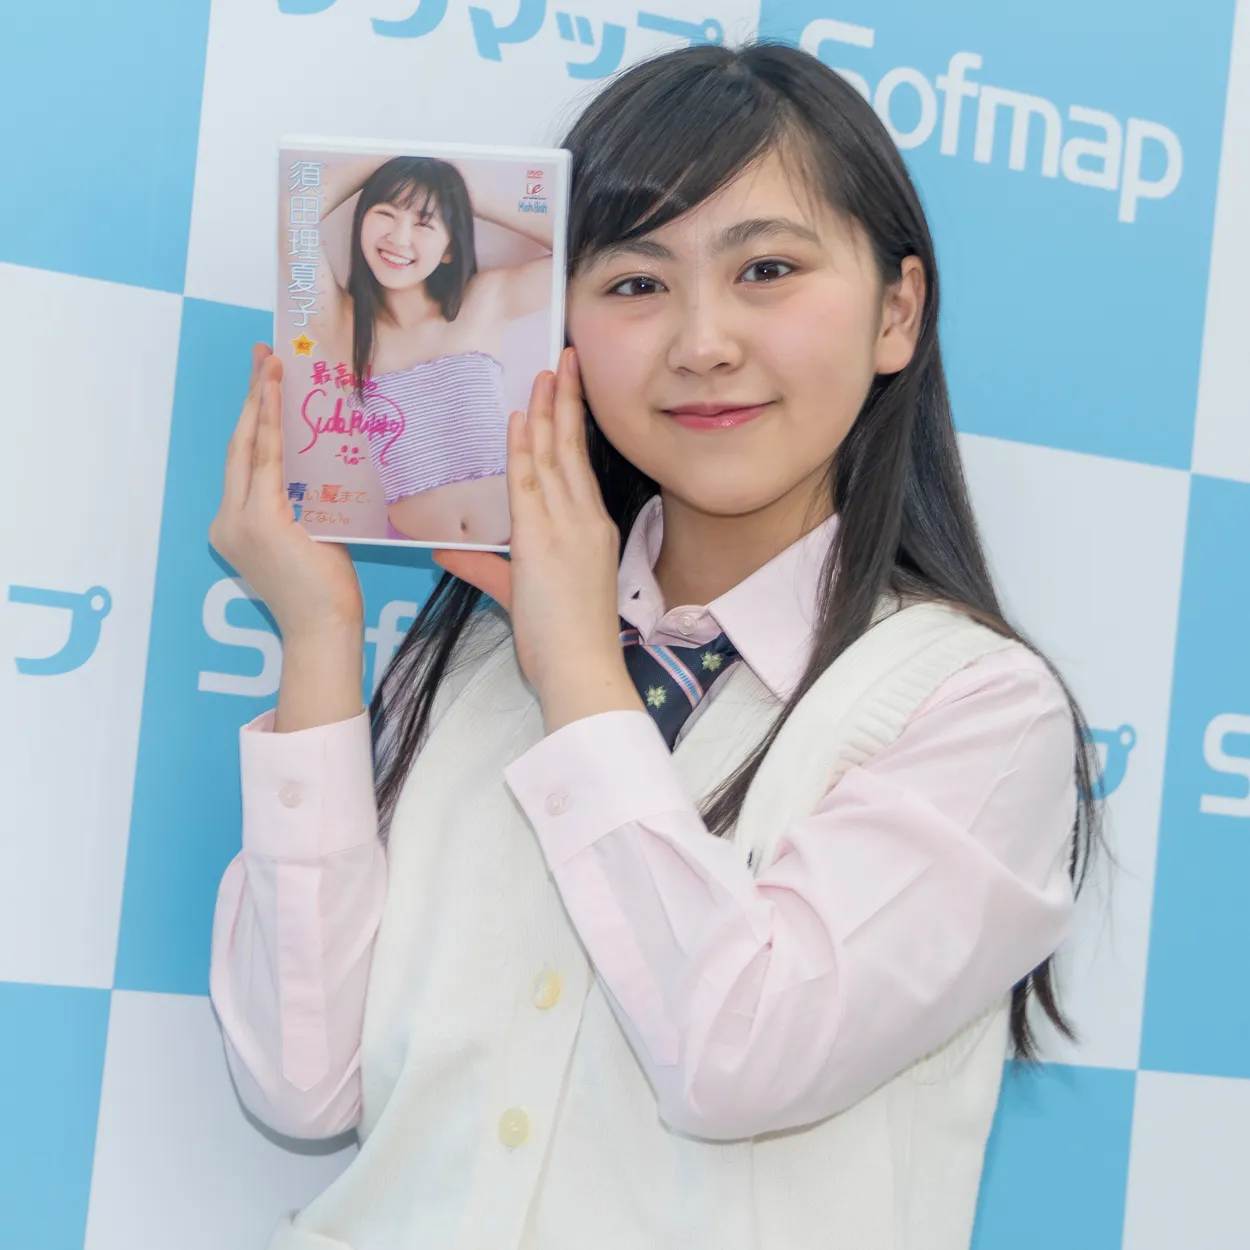 須田理夏子DVD「青い夏まで、待てない。」(EIC-BOOK)発売イベントより